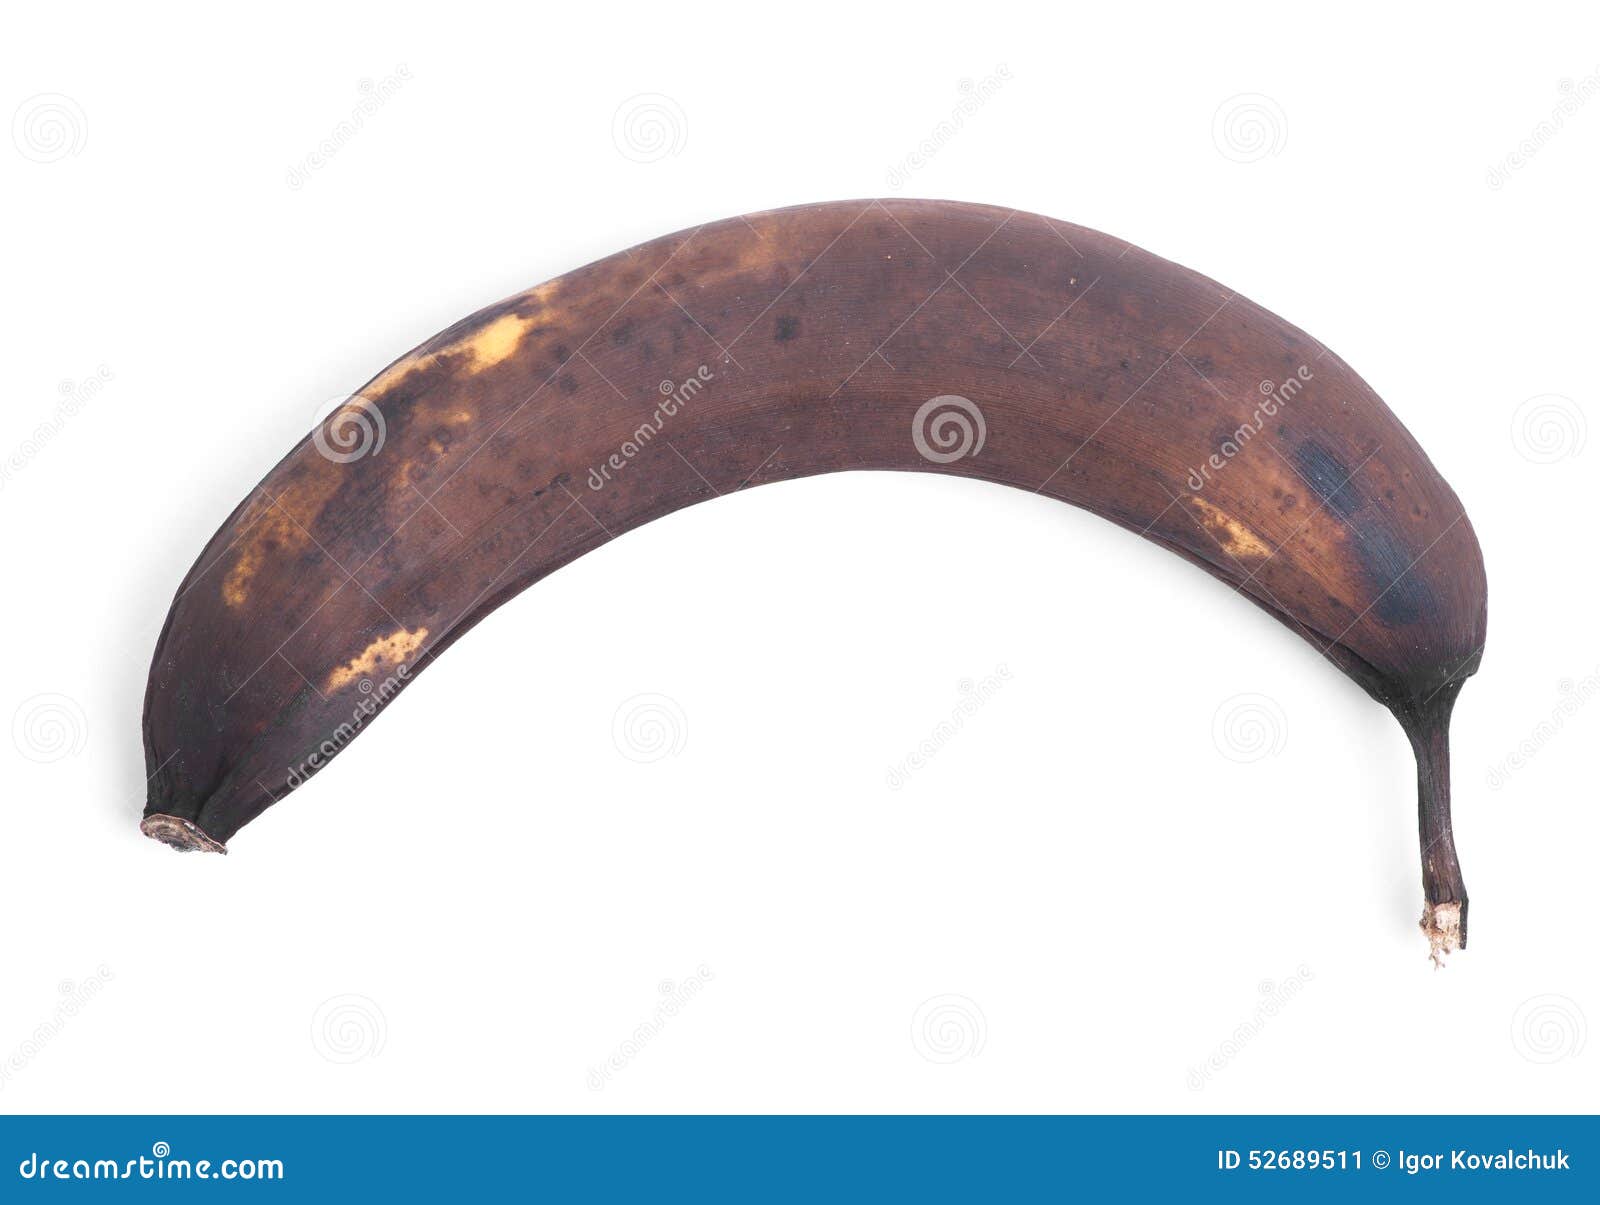 rotten banana